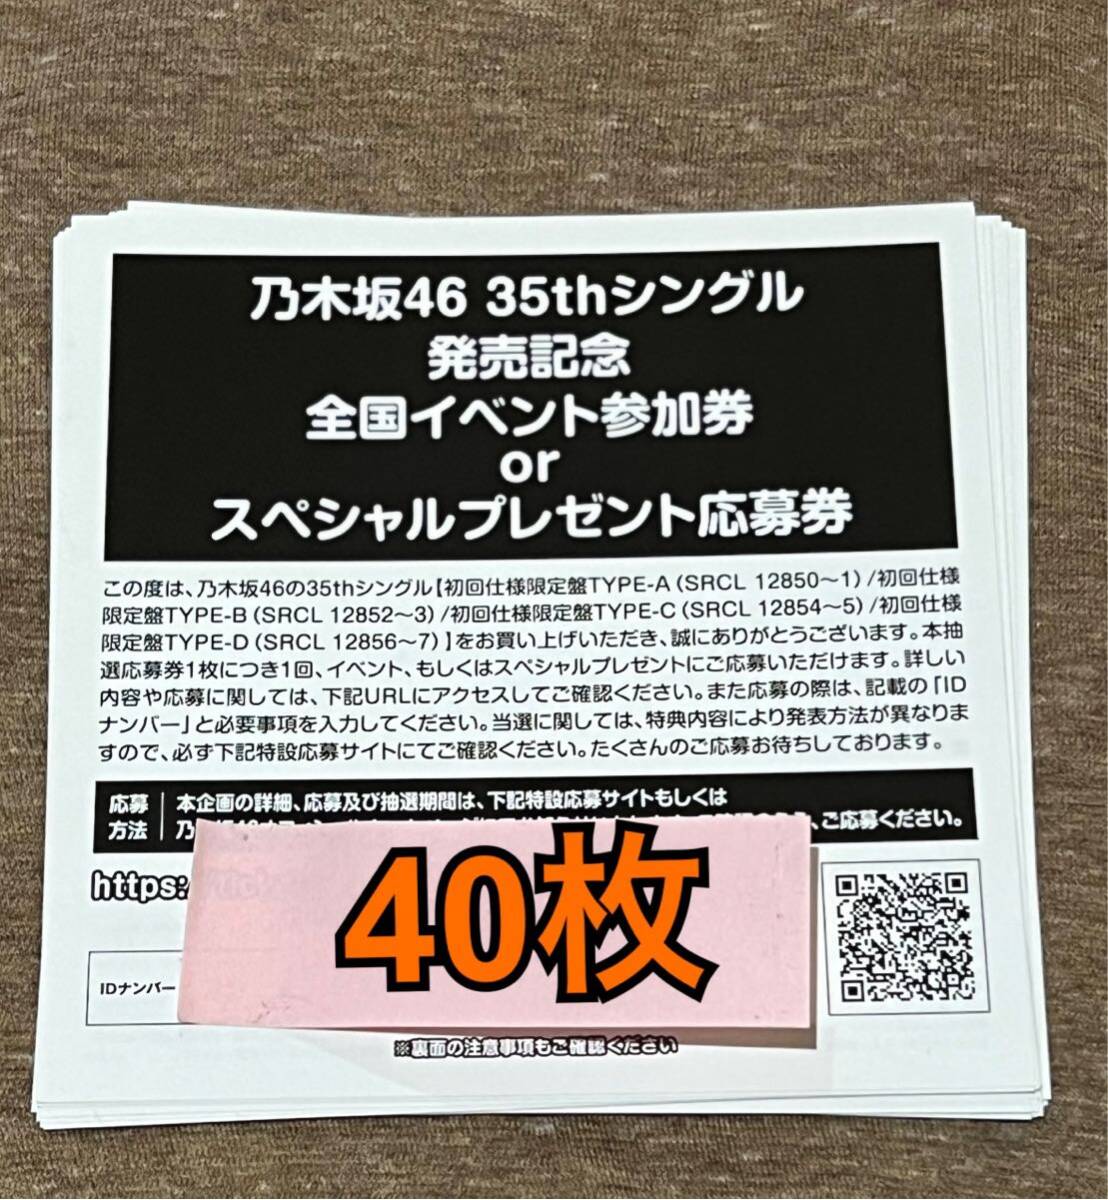 乃木坂46 チャンスは平等 初回限定盤 封入特典 スペシャルプレゼント抽選応募券 シリアル 40枚セットの画像1